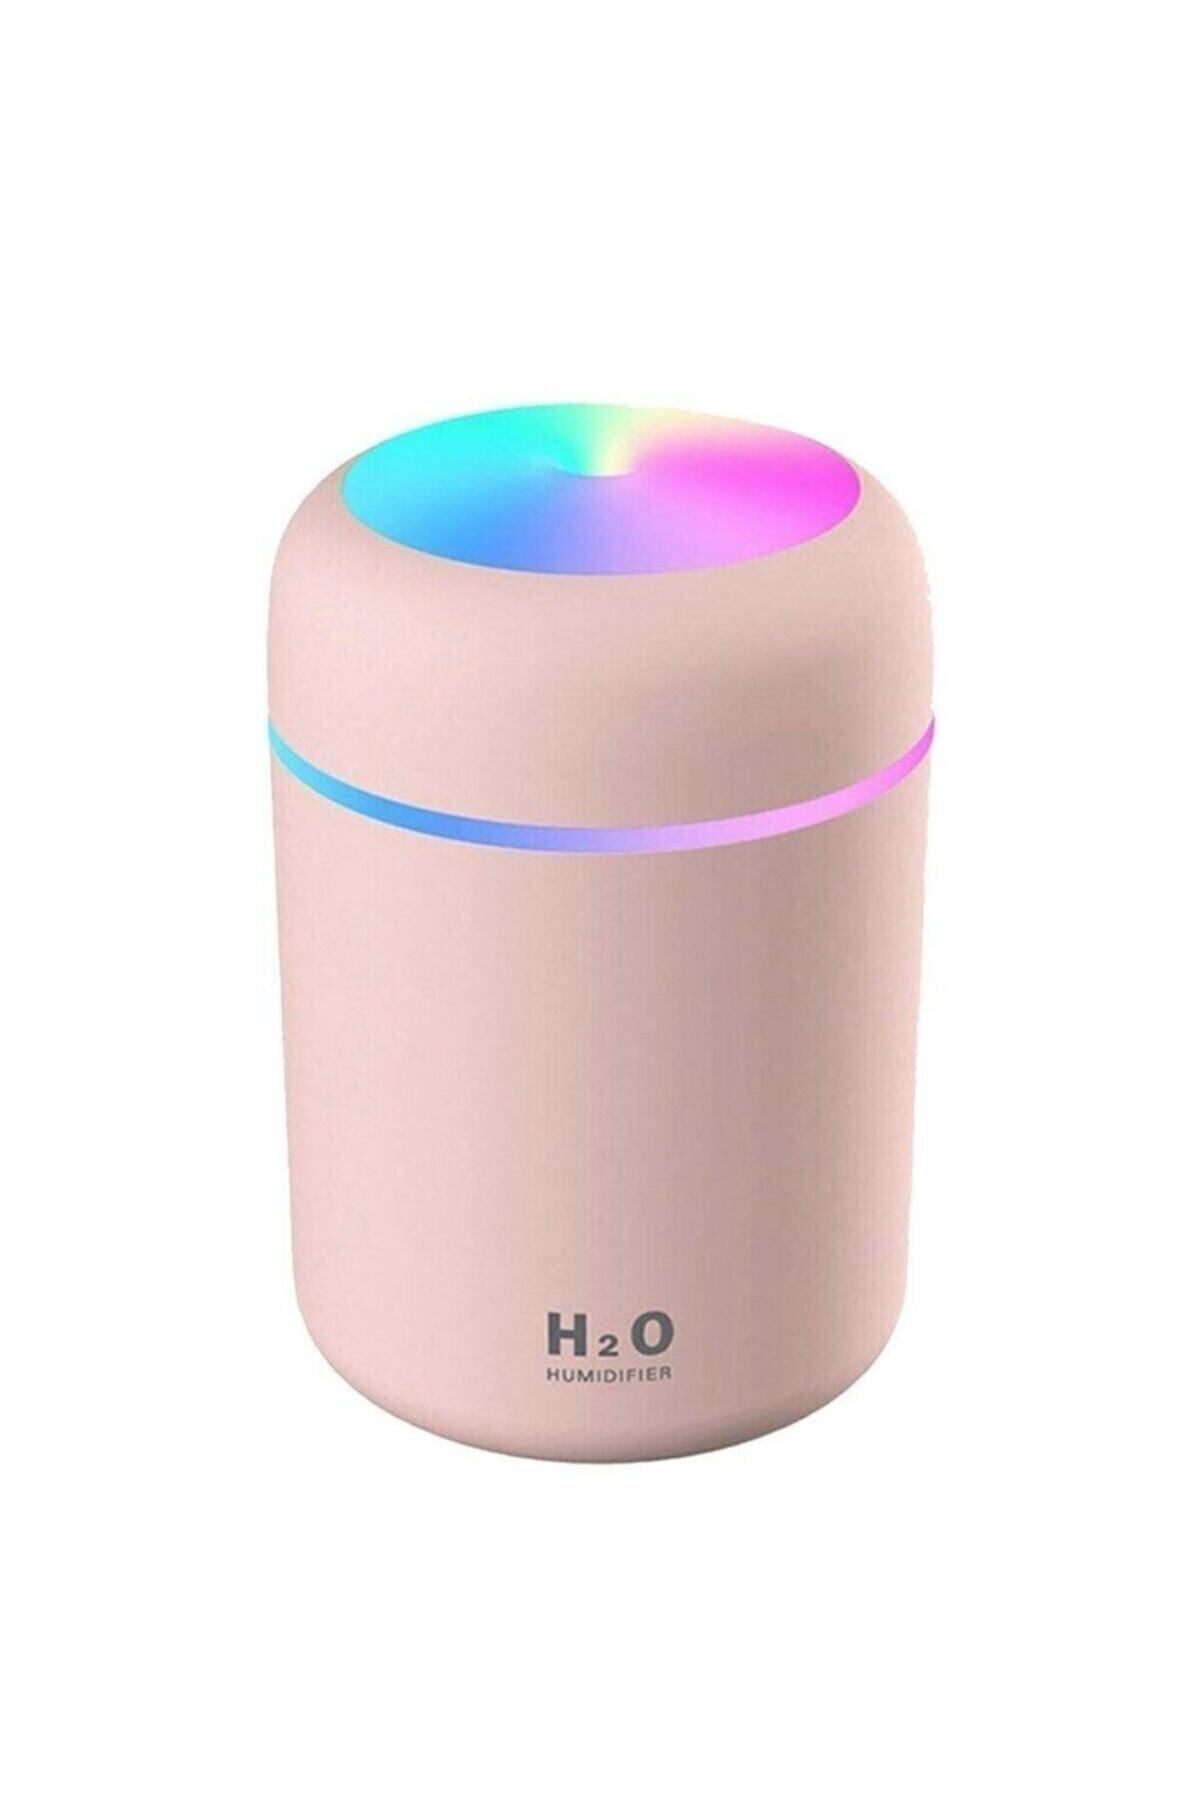 H2O Humidifier 300 Ml Ulrasonik Oda Hava Ortam Nemlendirici Ve Aroma Difüzörü (pembe)